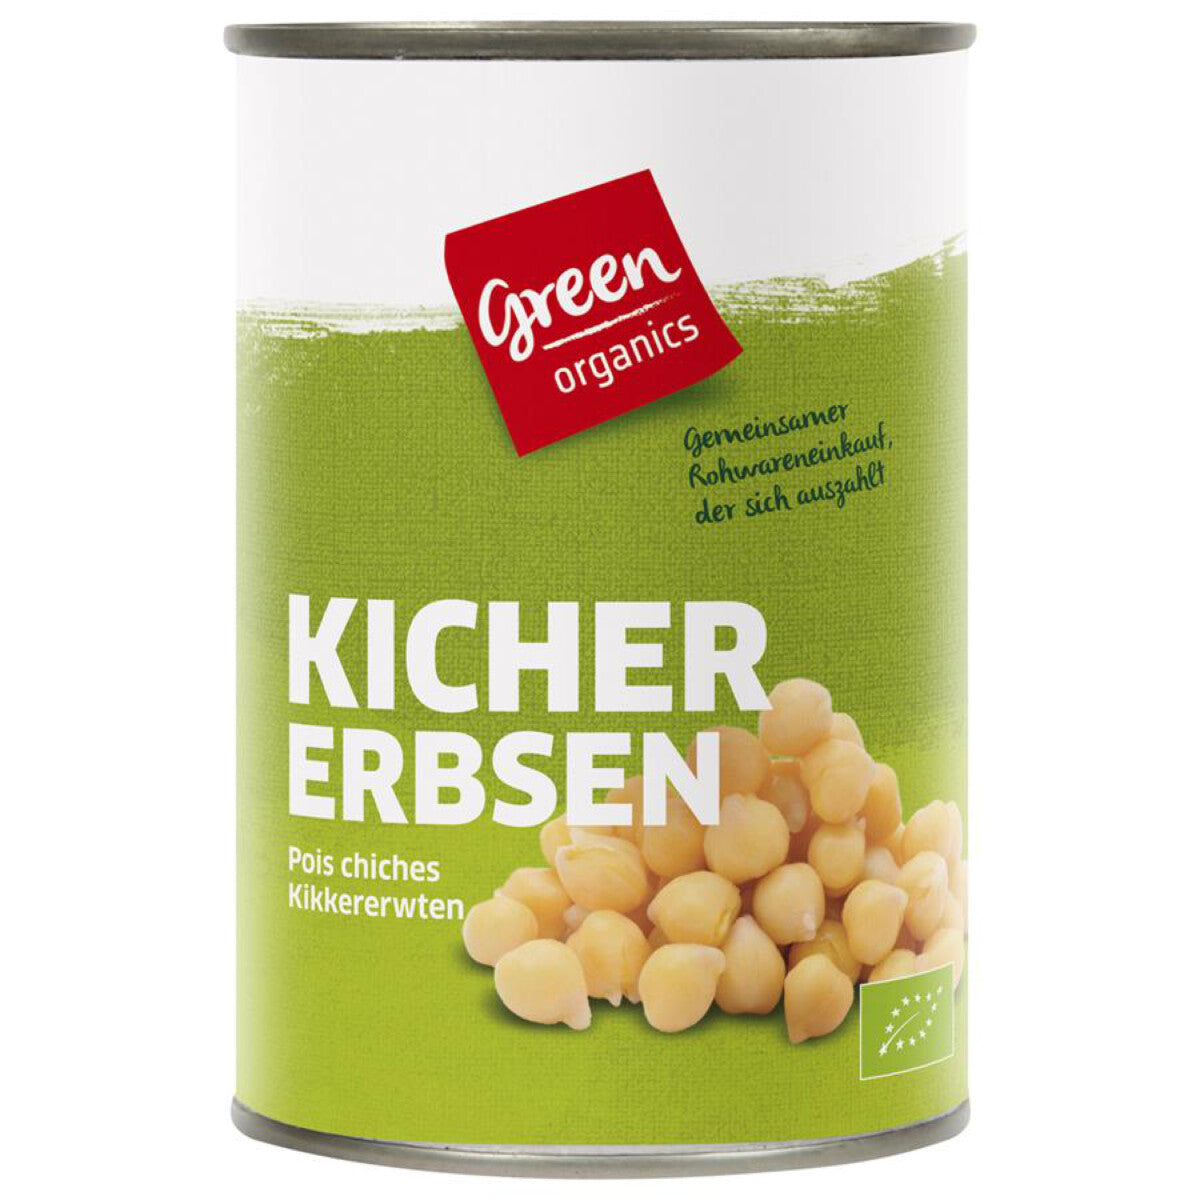 GREEN ORGANICS Kichererbsen - 400 g